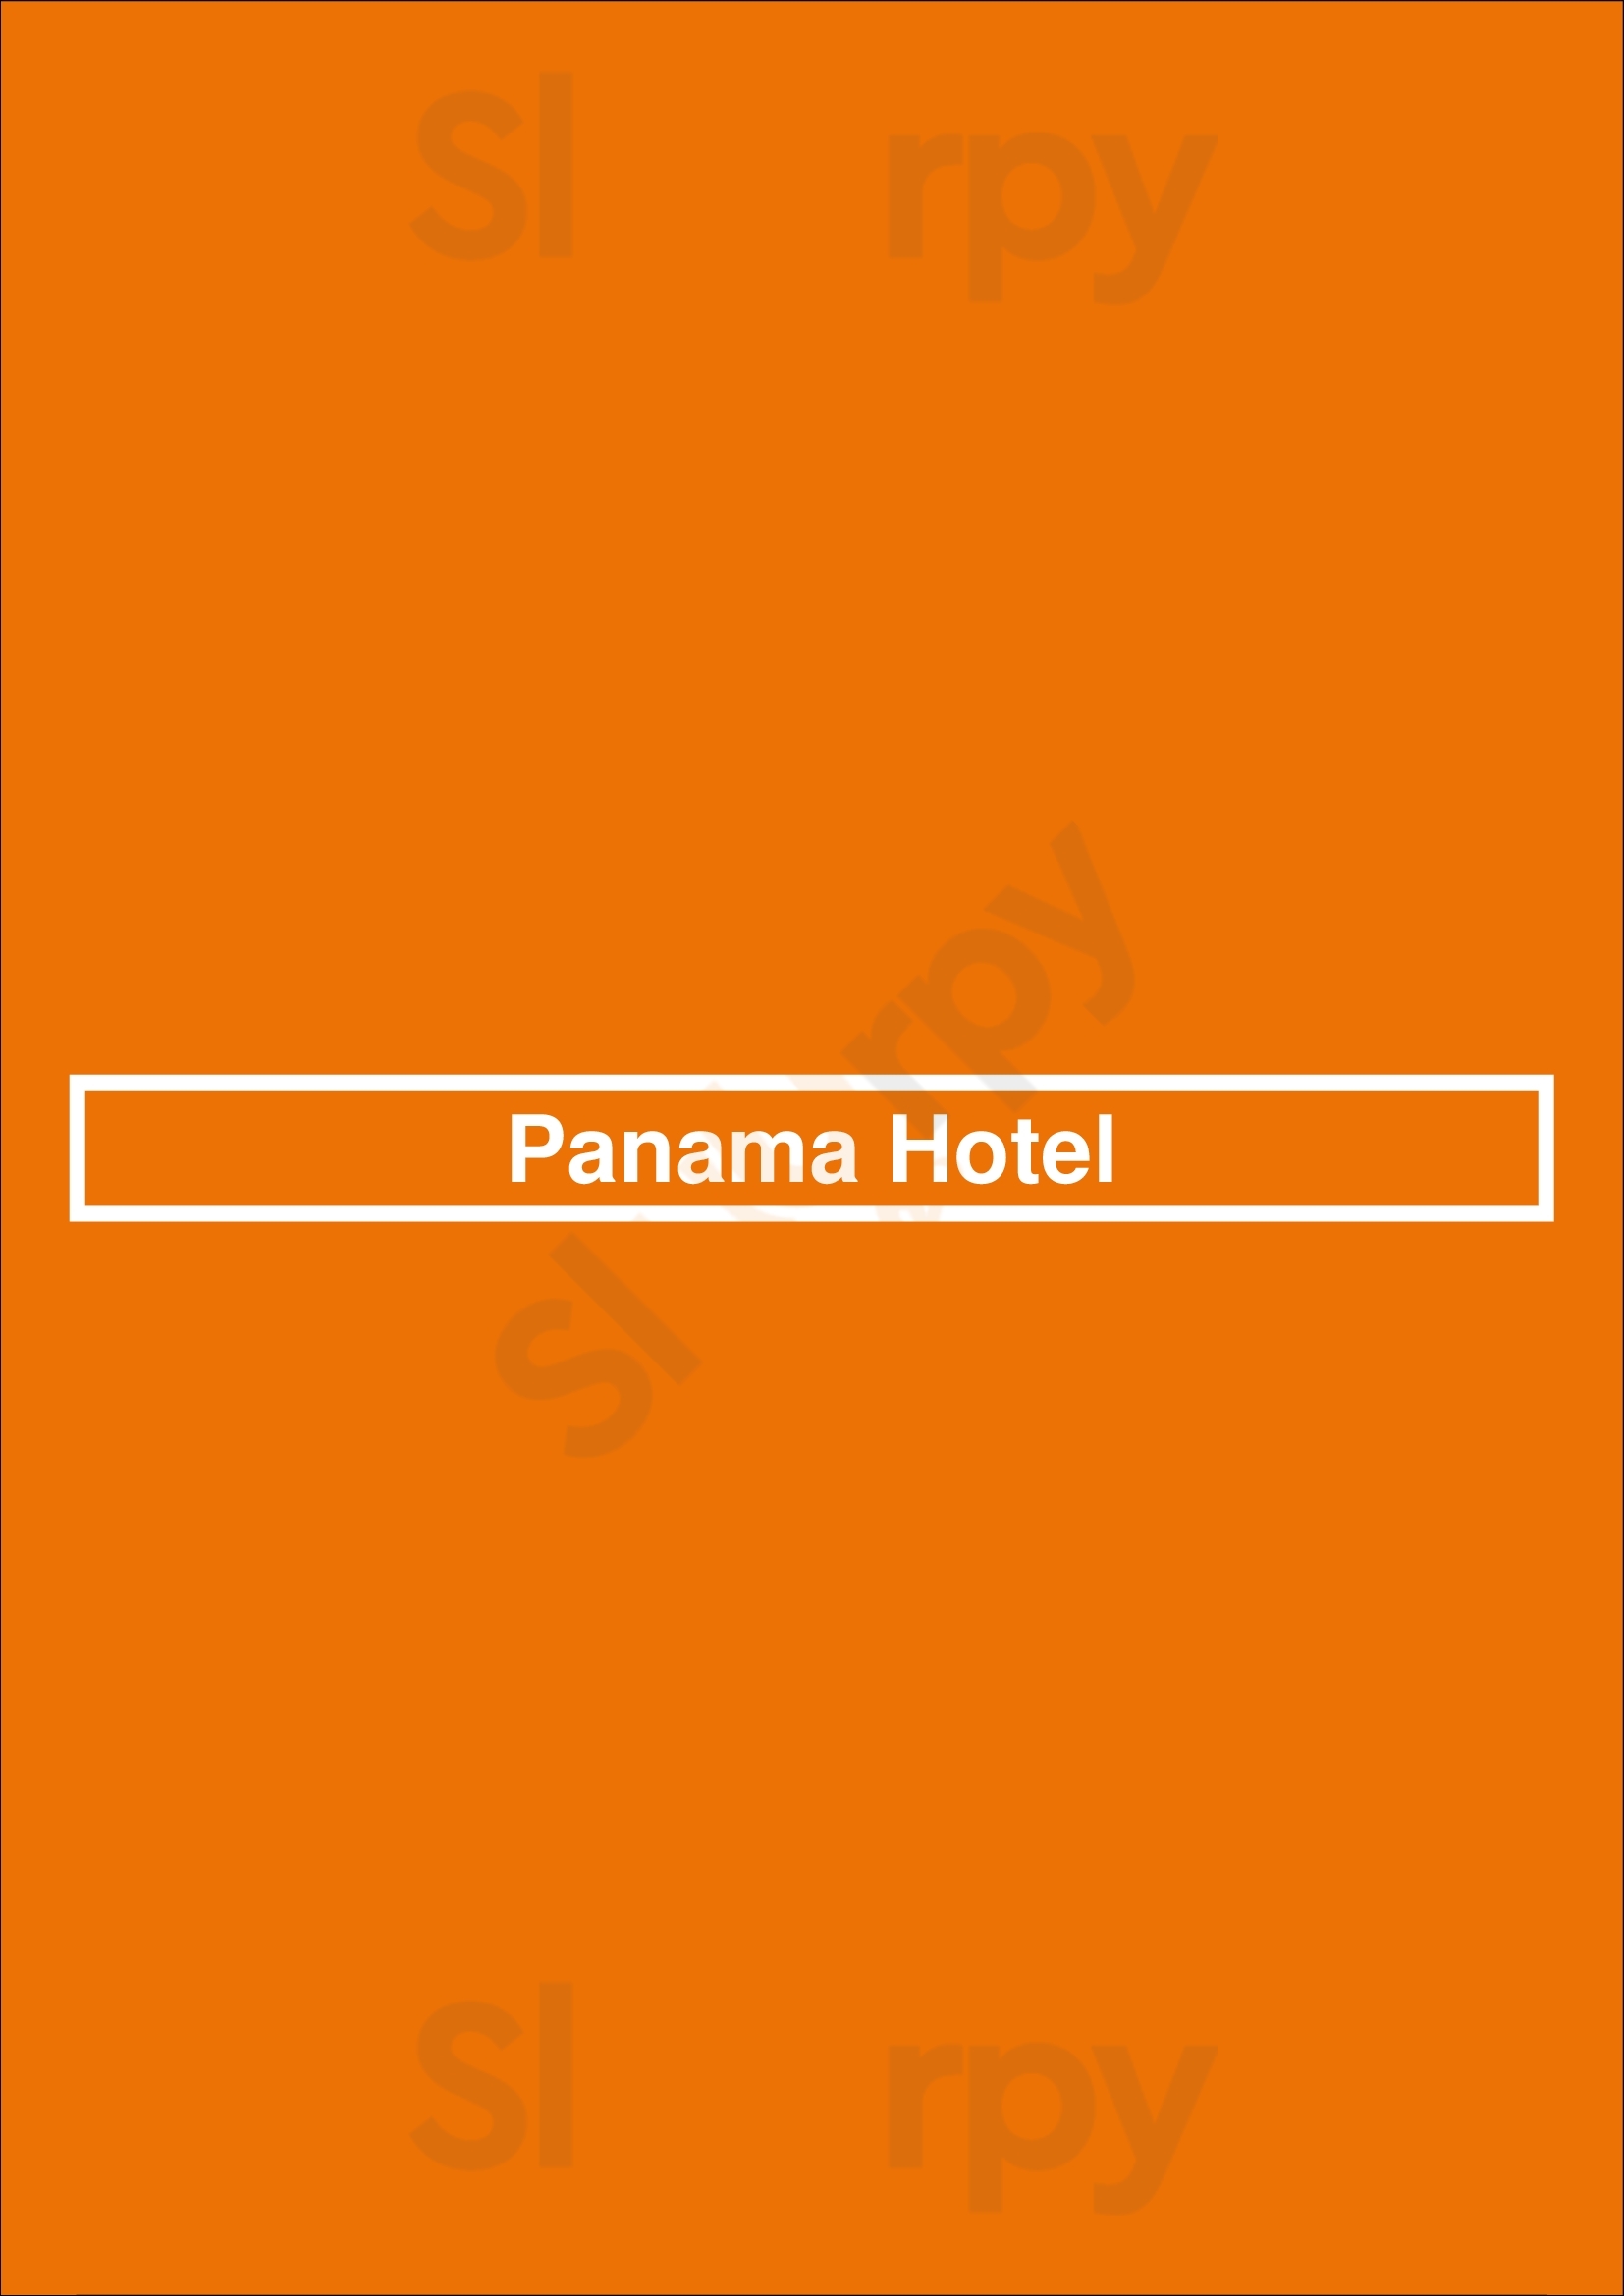 Panama Hotel San Rafael Menu - 1